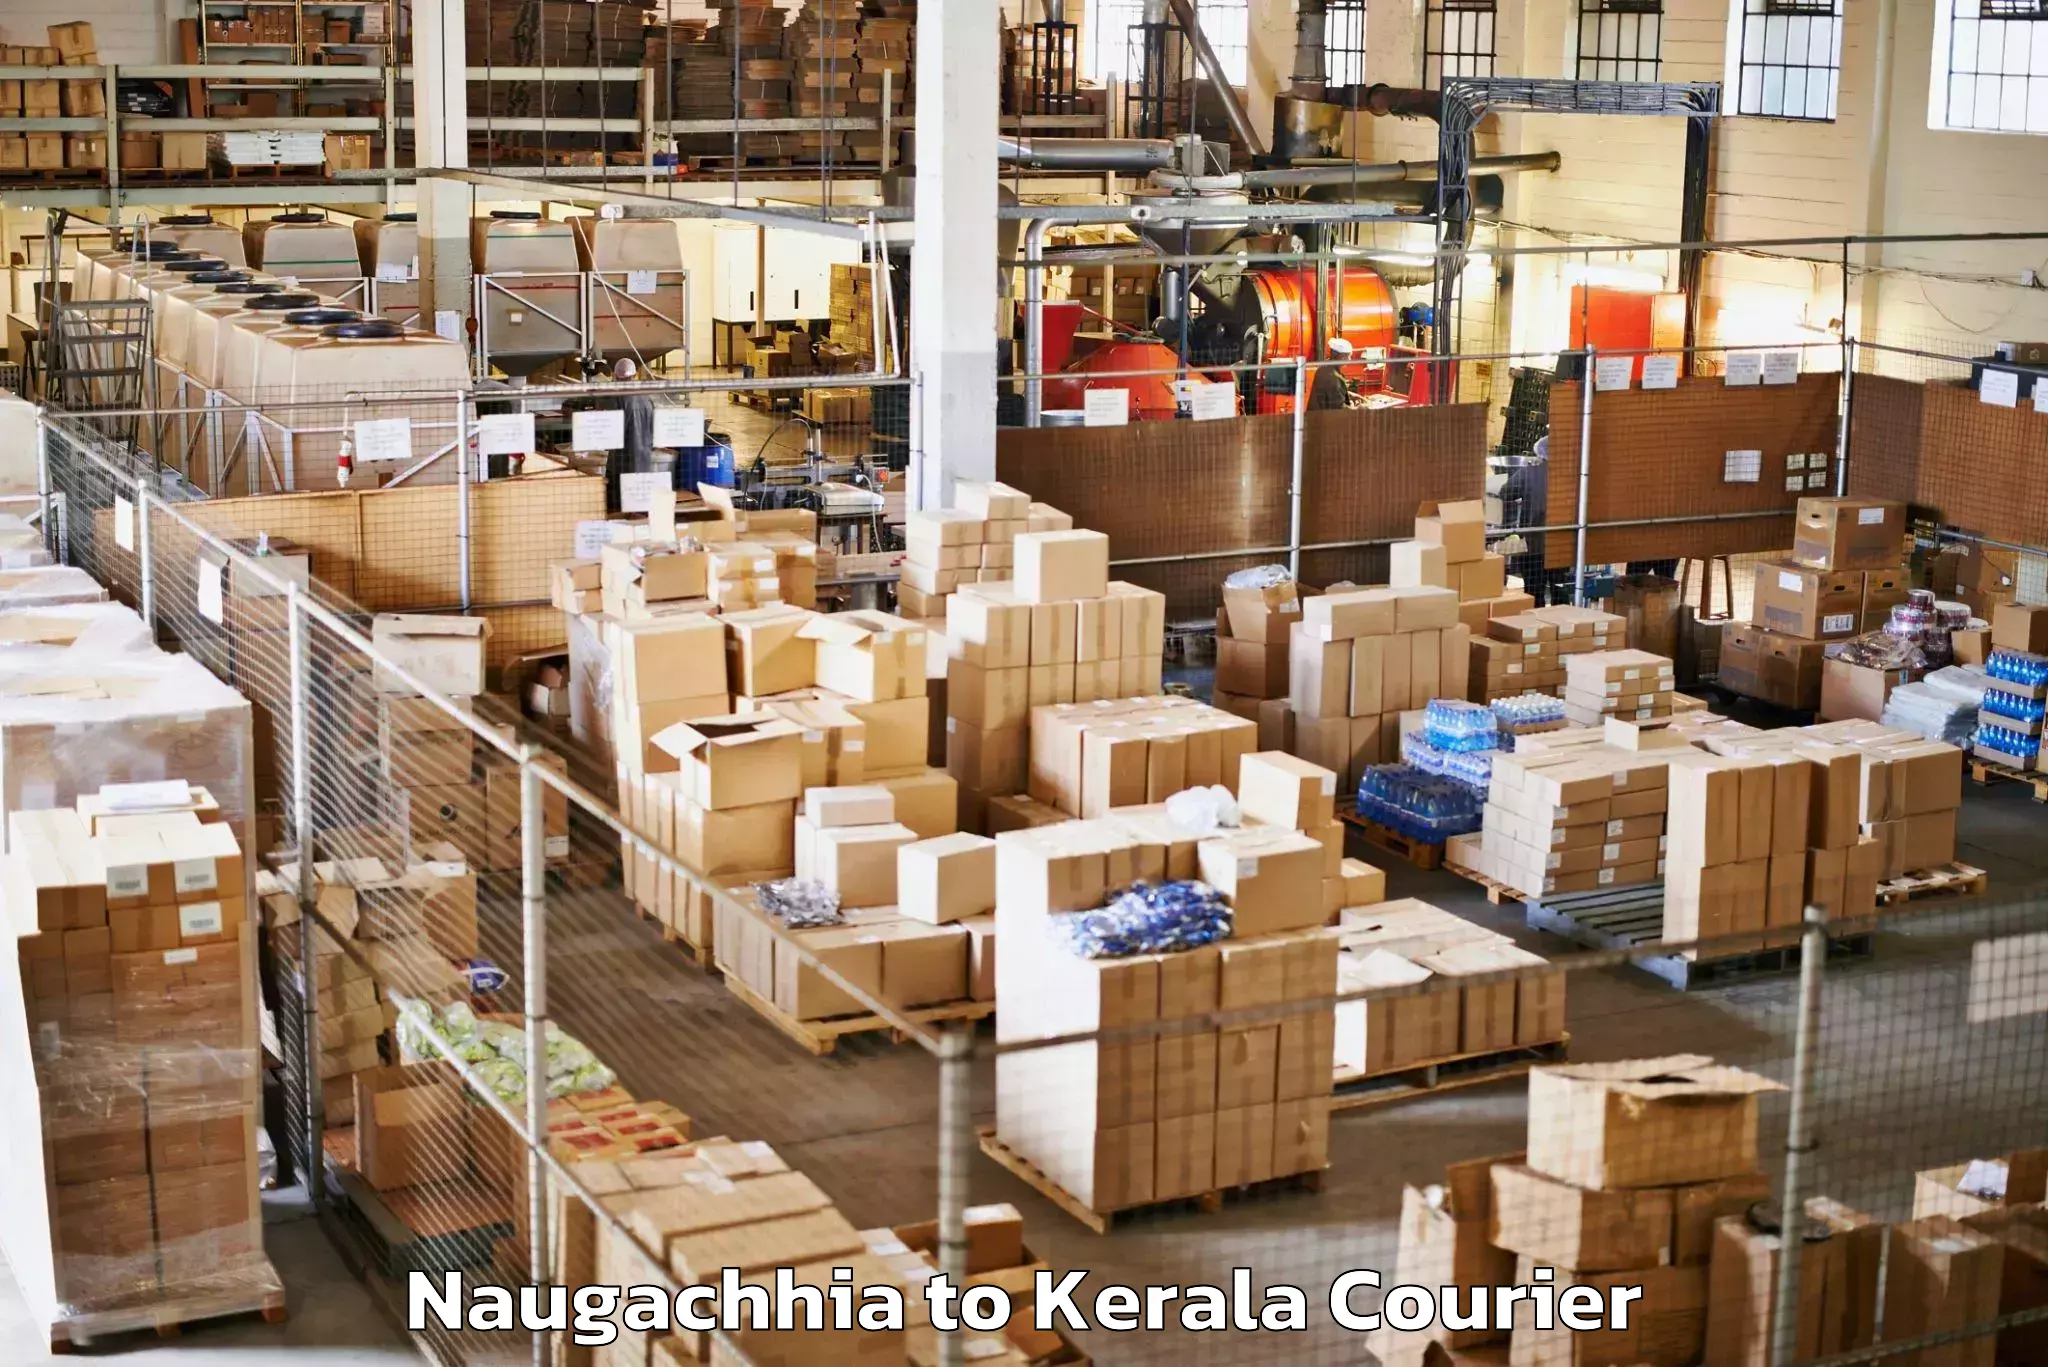 Baggage transport scheduler Naugachhia to Kerala